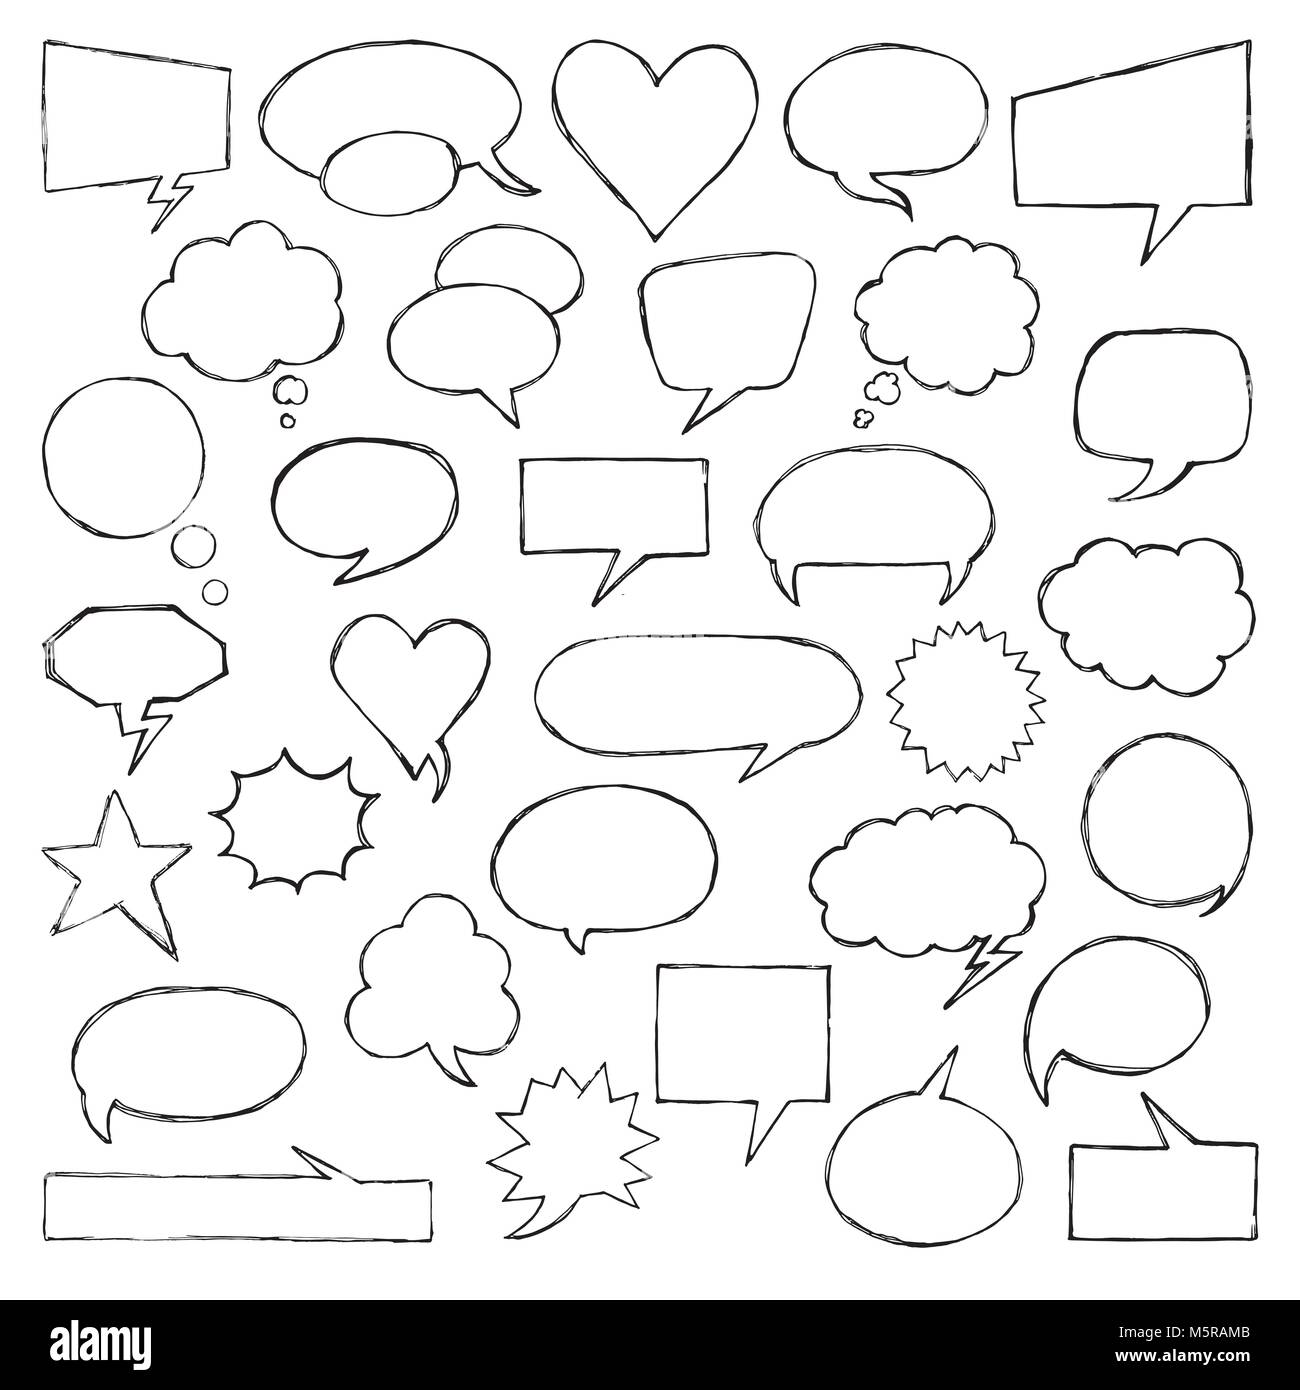 Penso di parlare i fumetti. Collezione artistica di disegnato a mano stile doodle palloncino comico, cloud e di cuore. Illustrazione Vettoriale nel disegno stile. Illustrazione Vettoriale